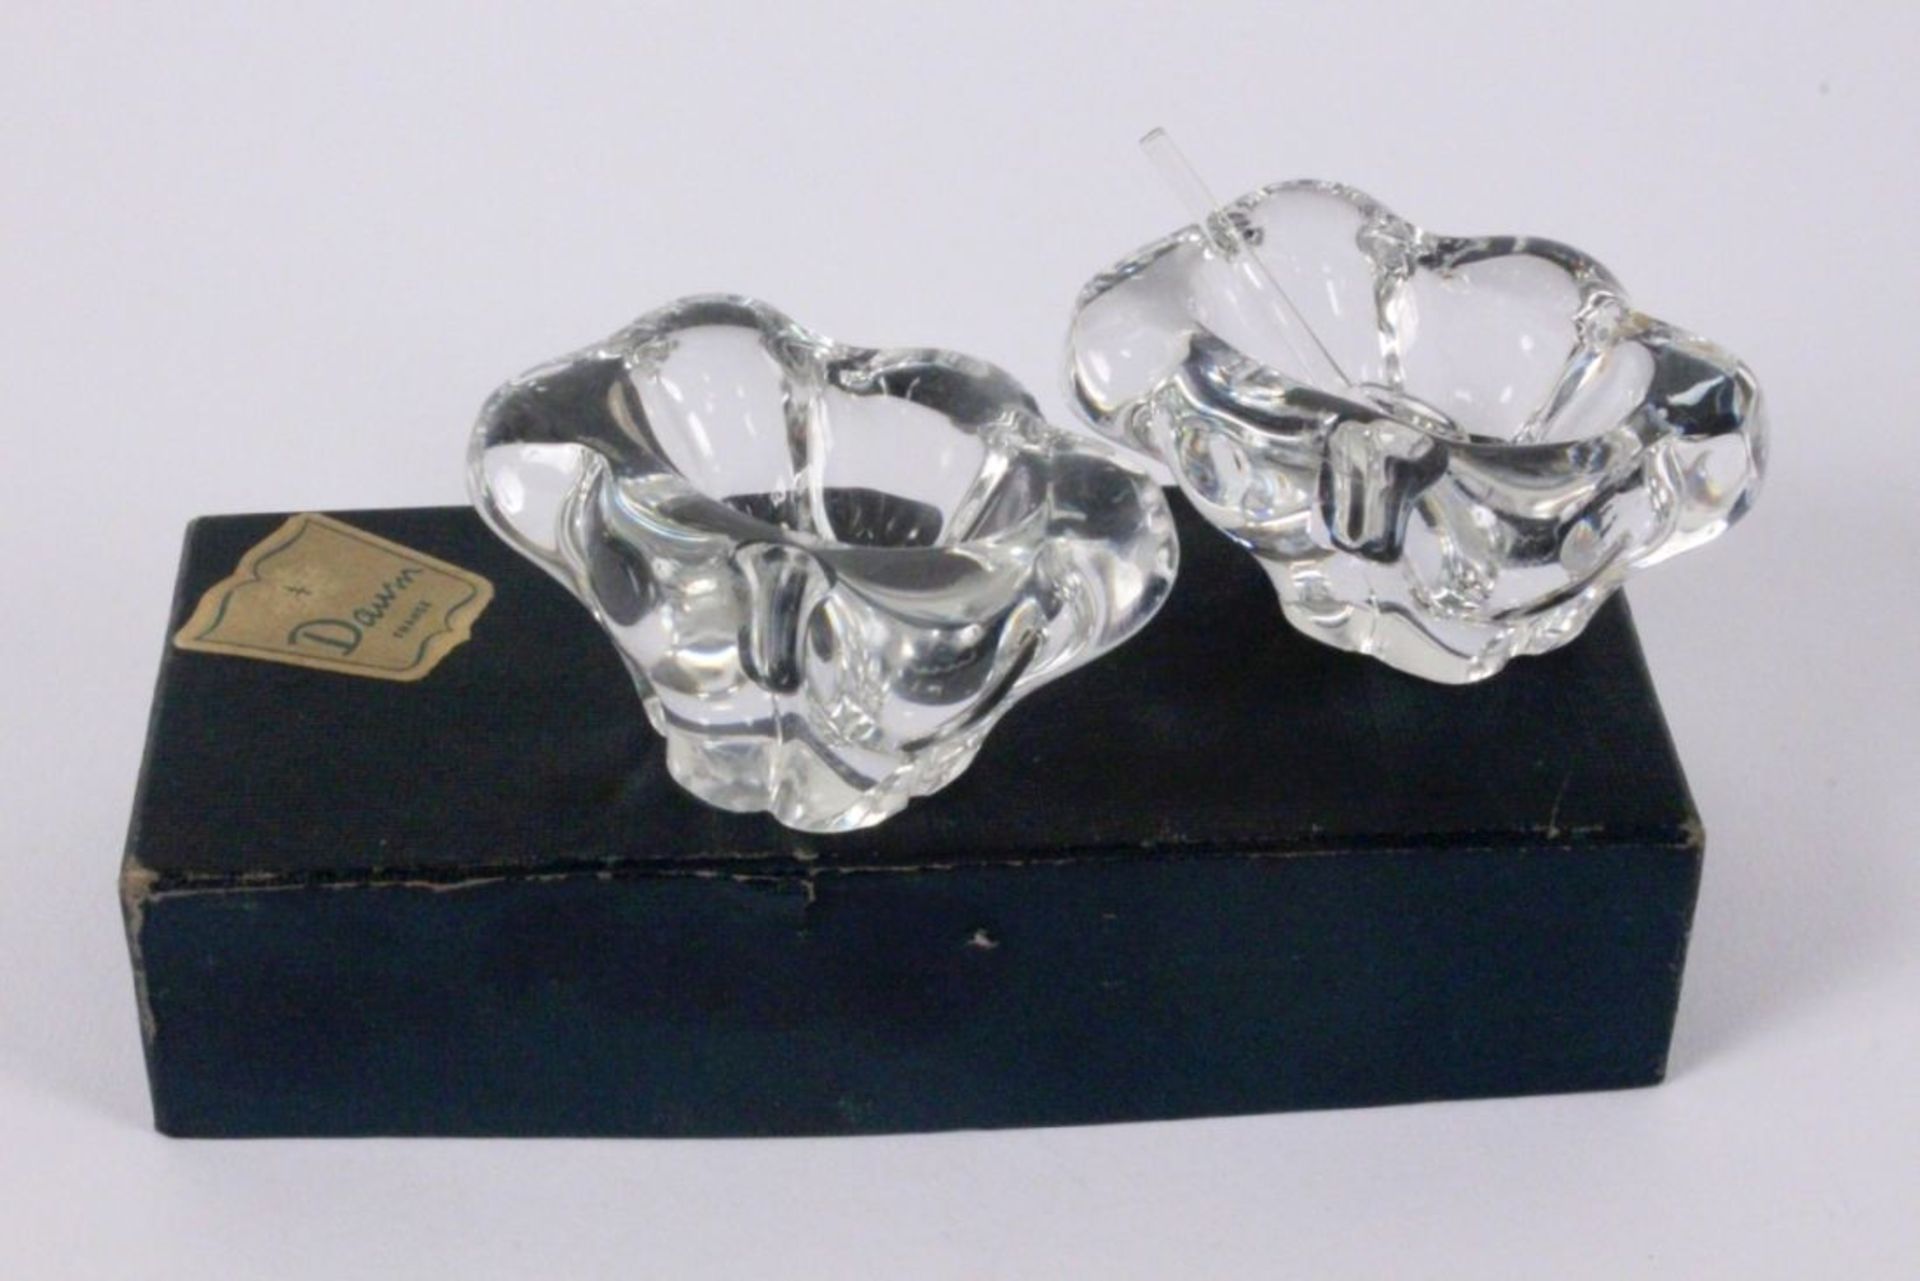 PAAR DAUM SALZSCHALENFarbloses Kristallglas. Mit Löffel, in der OriginalschachtelAufrufpreis: 60 EUR - Bild 3 aus 3